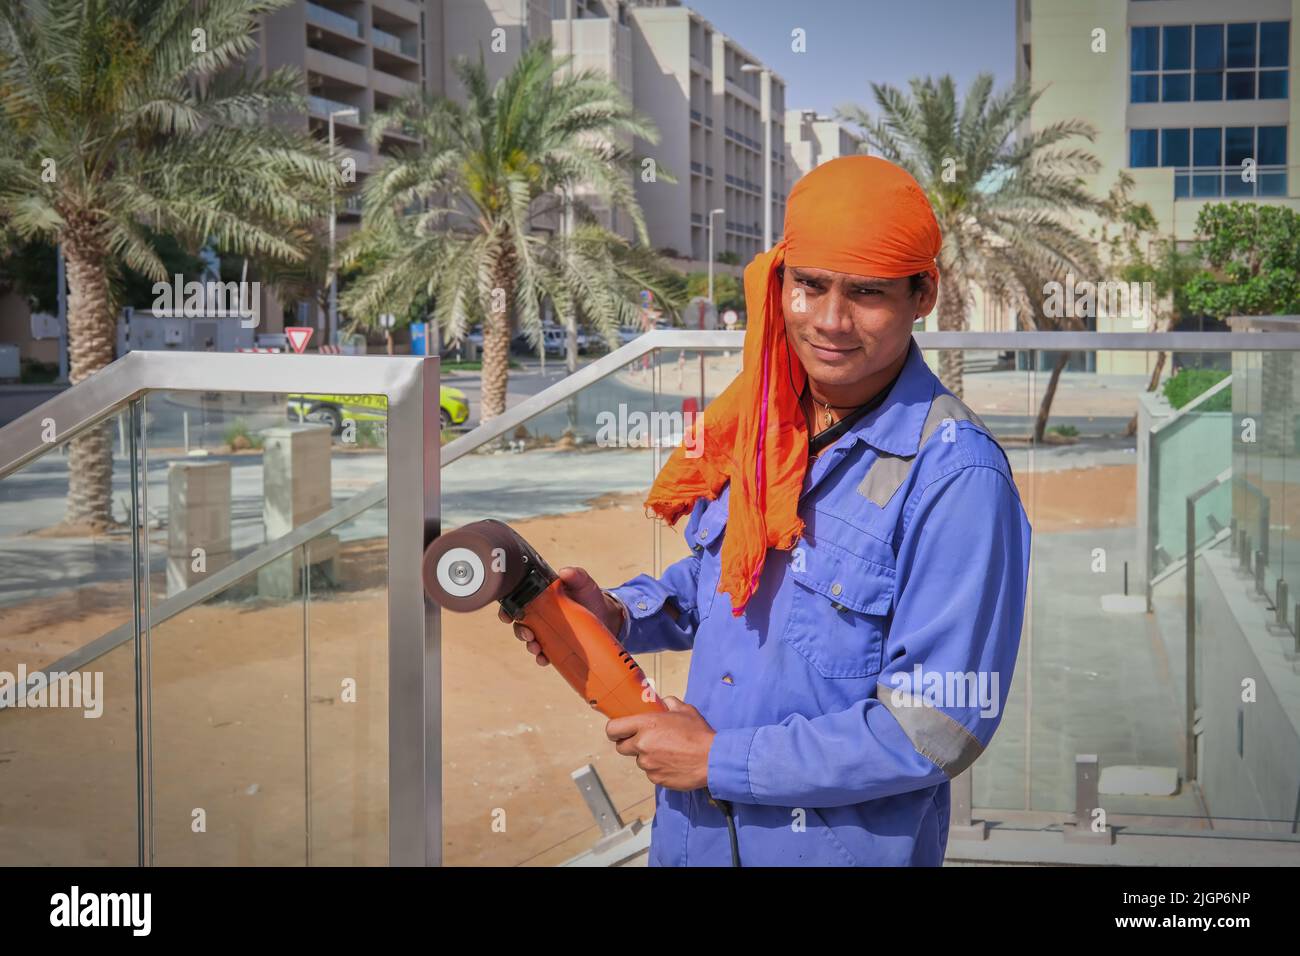 Porträt eines jungen Straßenarbeiters aus dem Nahen Osten mit blauer Uniform und orangefarbenem Kopfschmuck und polierfähigem Polierwerkzeug in den Händen.VAE Stockfoto